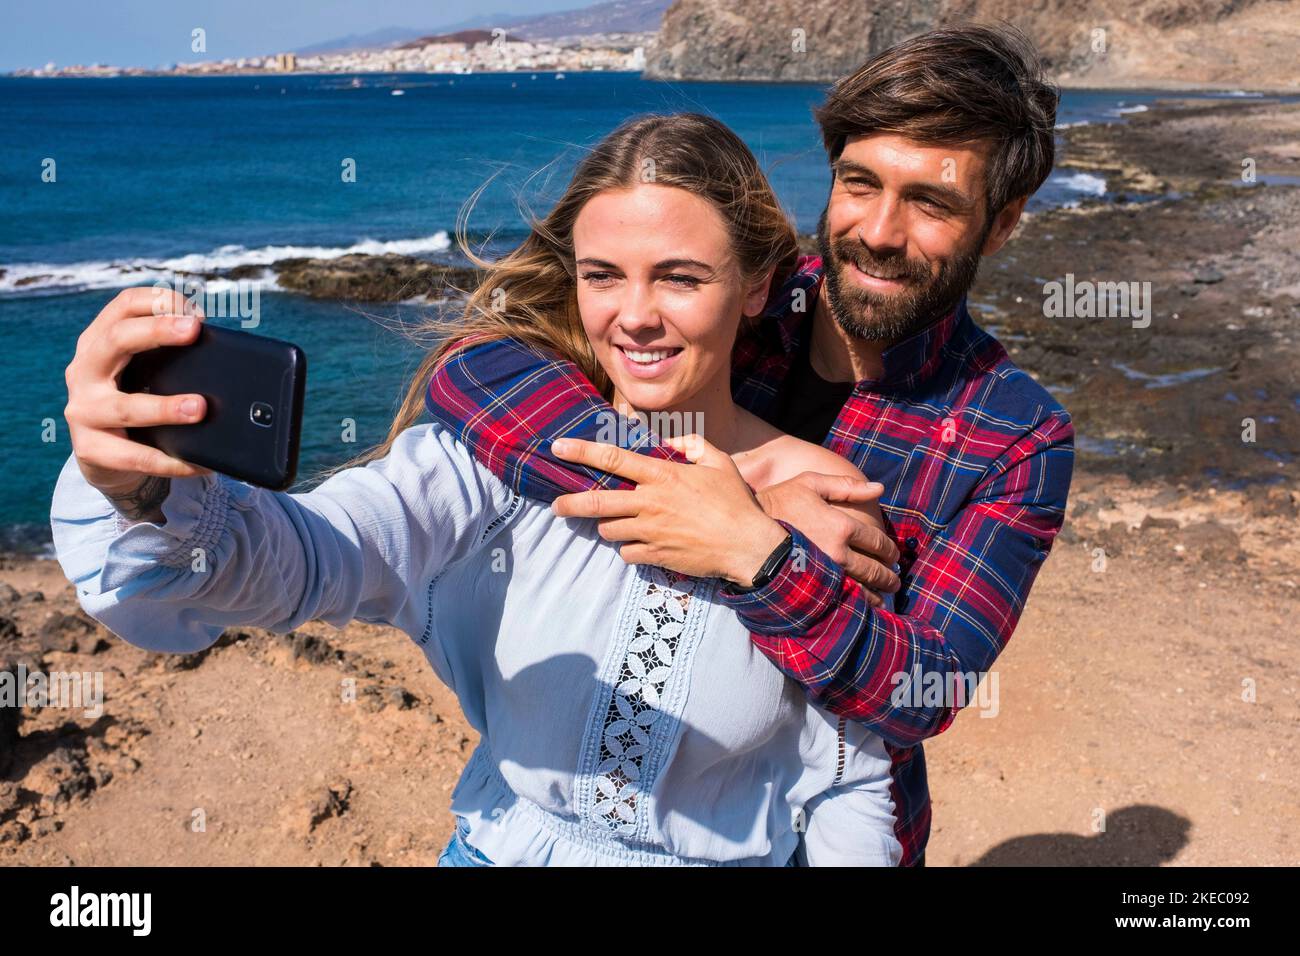 carino coppia di adulti che prendono un selfie insieme un spiaggia con il mare sullo sfondo - due belle e le persone attraenti sorridendo guardando la fotocamera Foto Stock